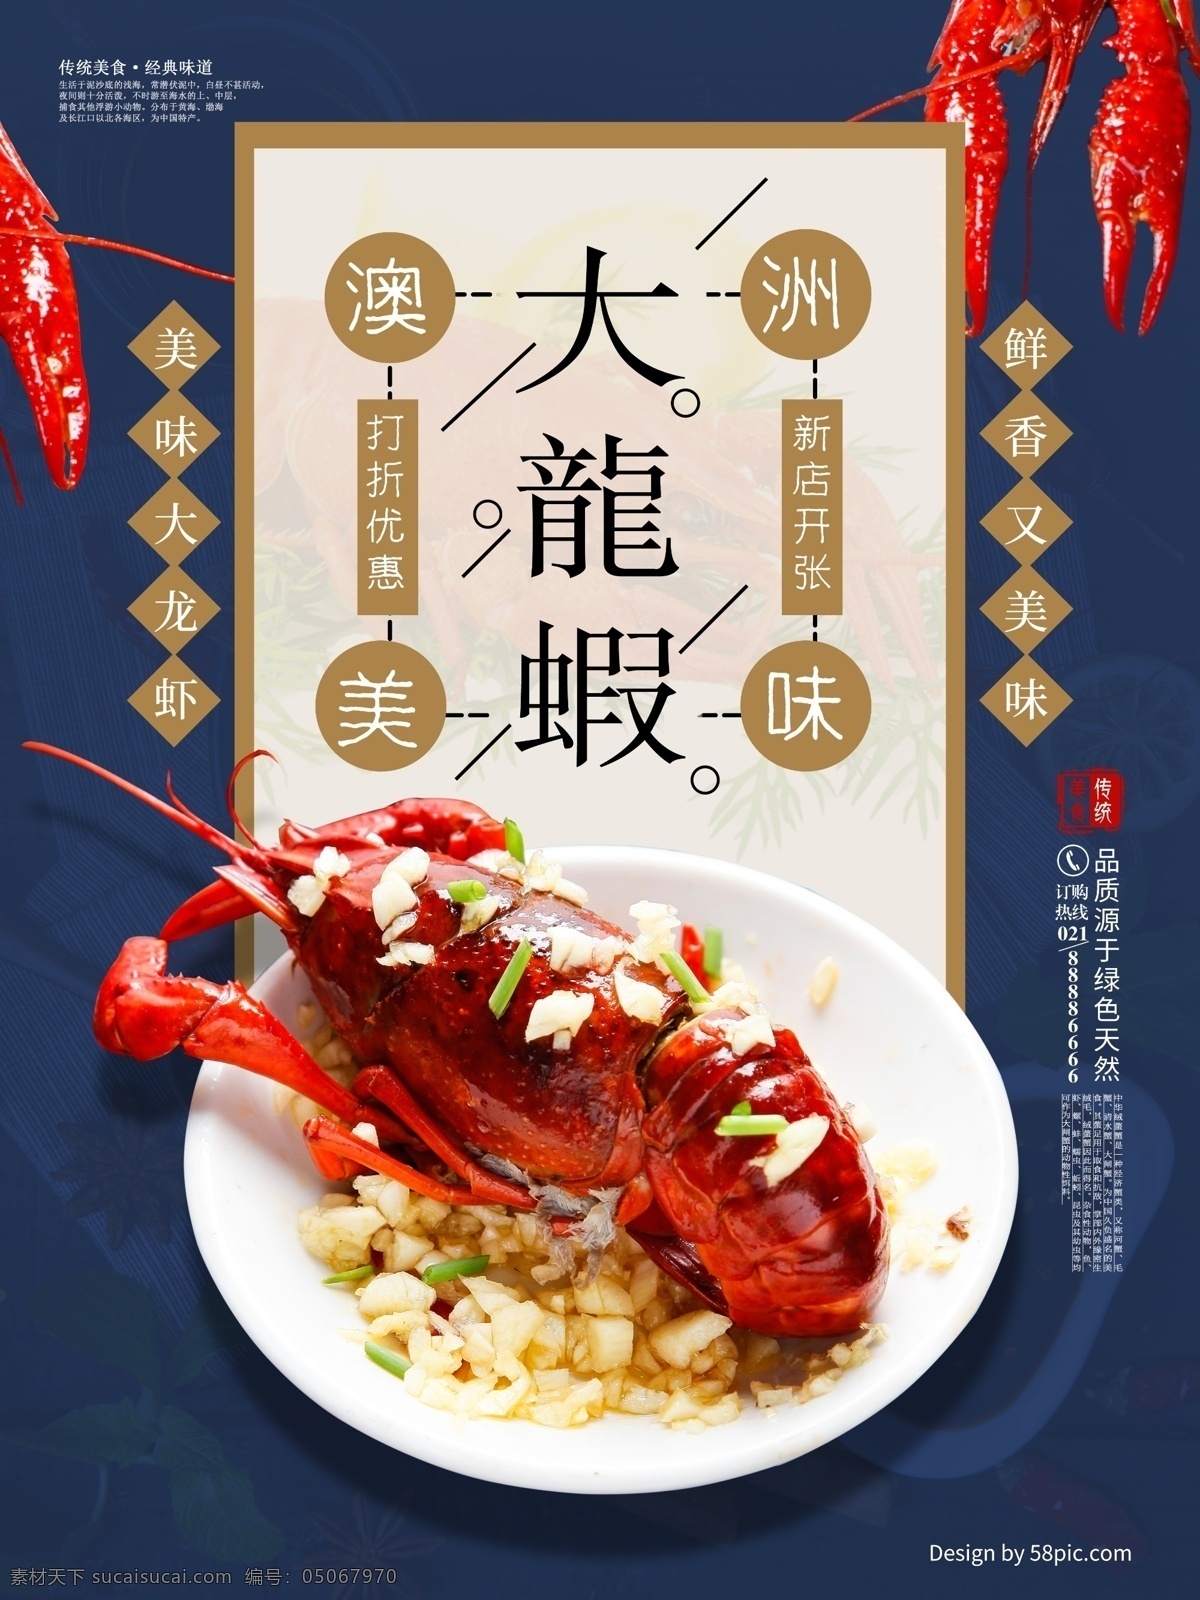 澳洲 大龙 虾 美食 海报 大龙虾 促销 打折 美味 传统